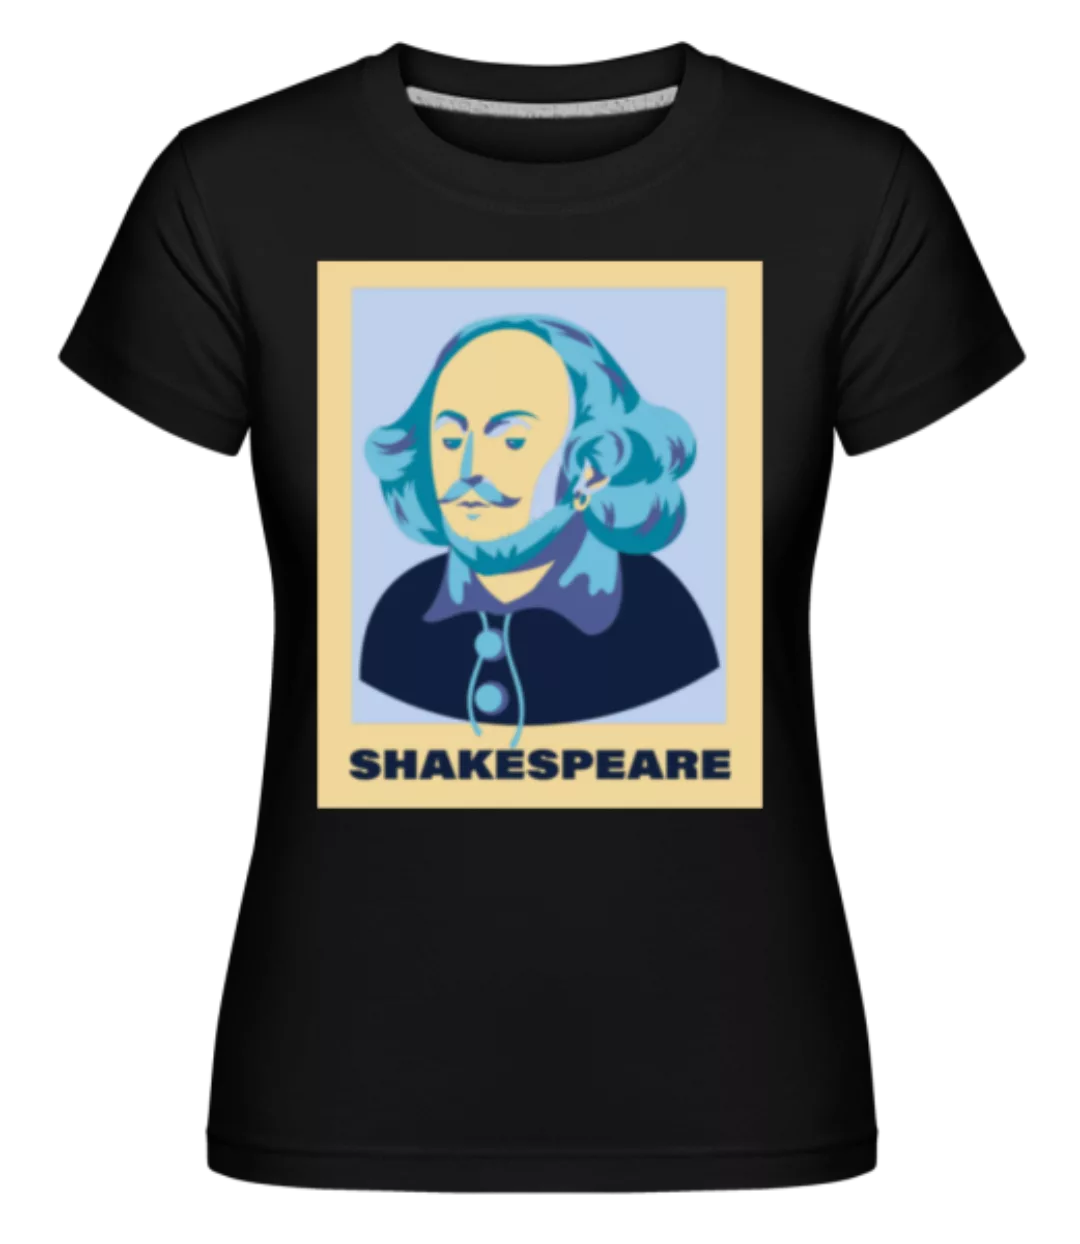 Shakespeare · Shirtinator Frauen T-Shirt günstig online kaufen